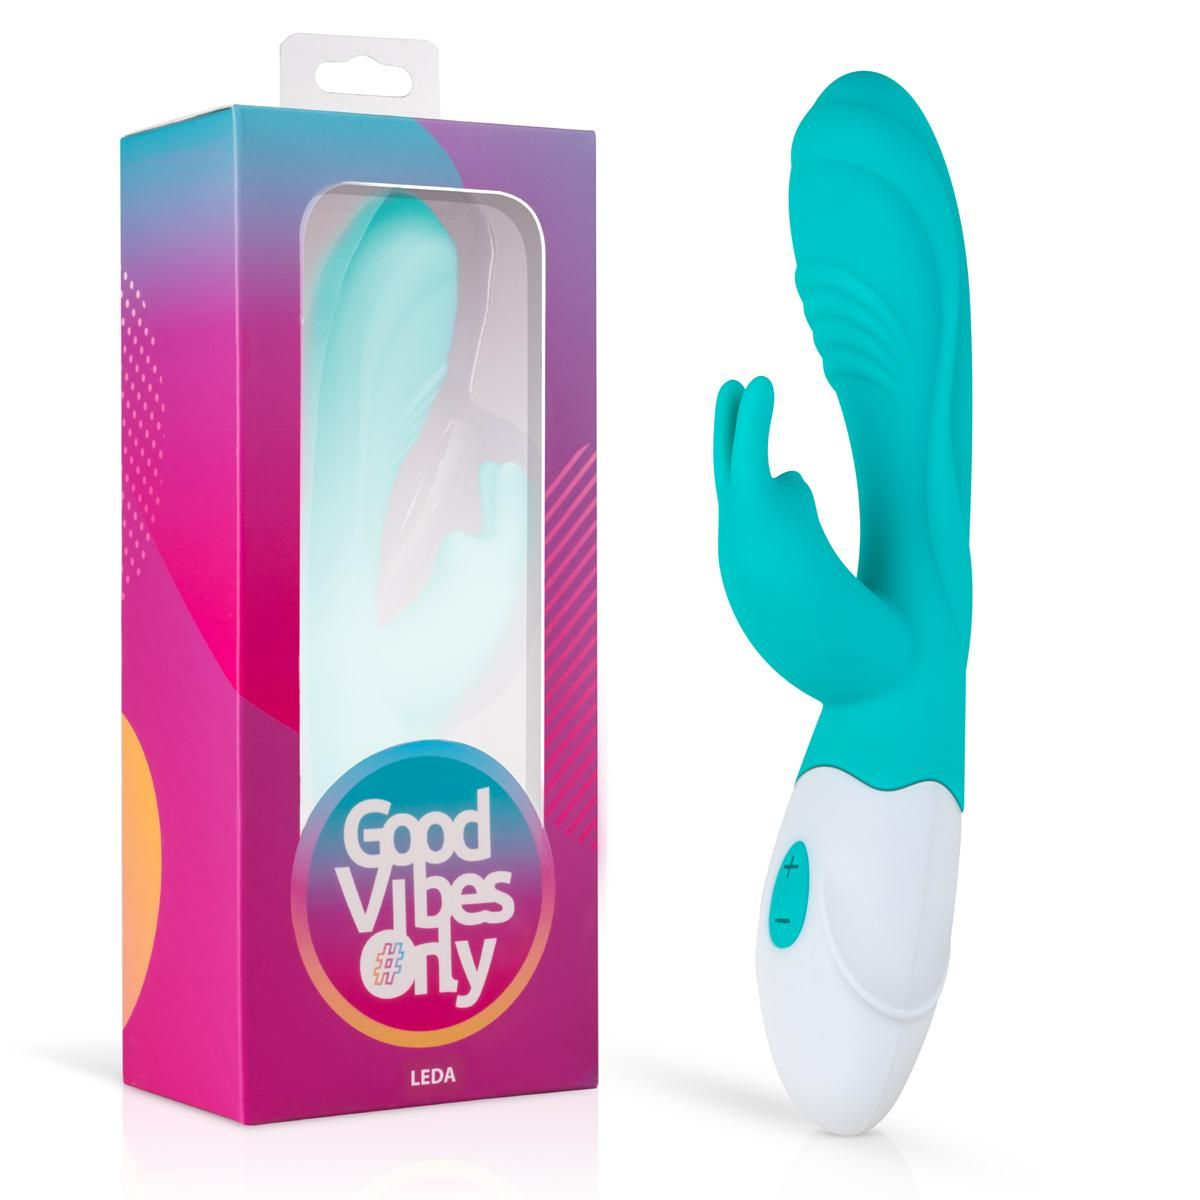 Vibrator Rabbit ONLY Leda rabbit-vibratoren GOOD VIBES